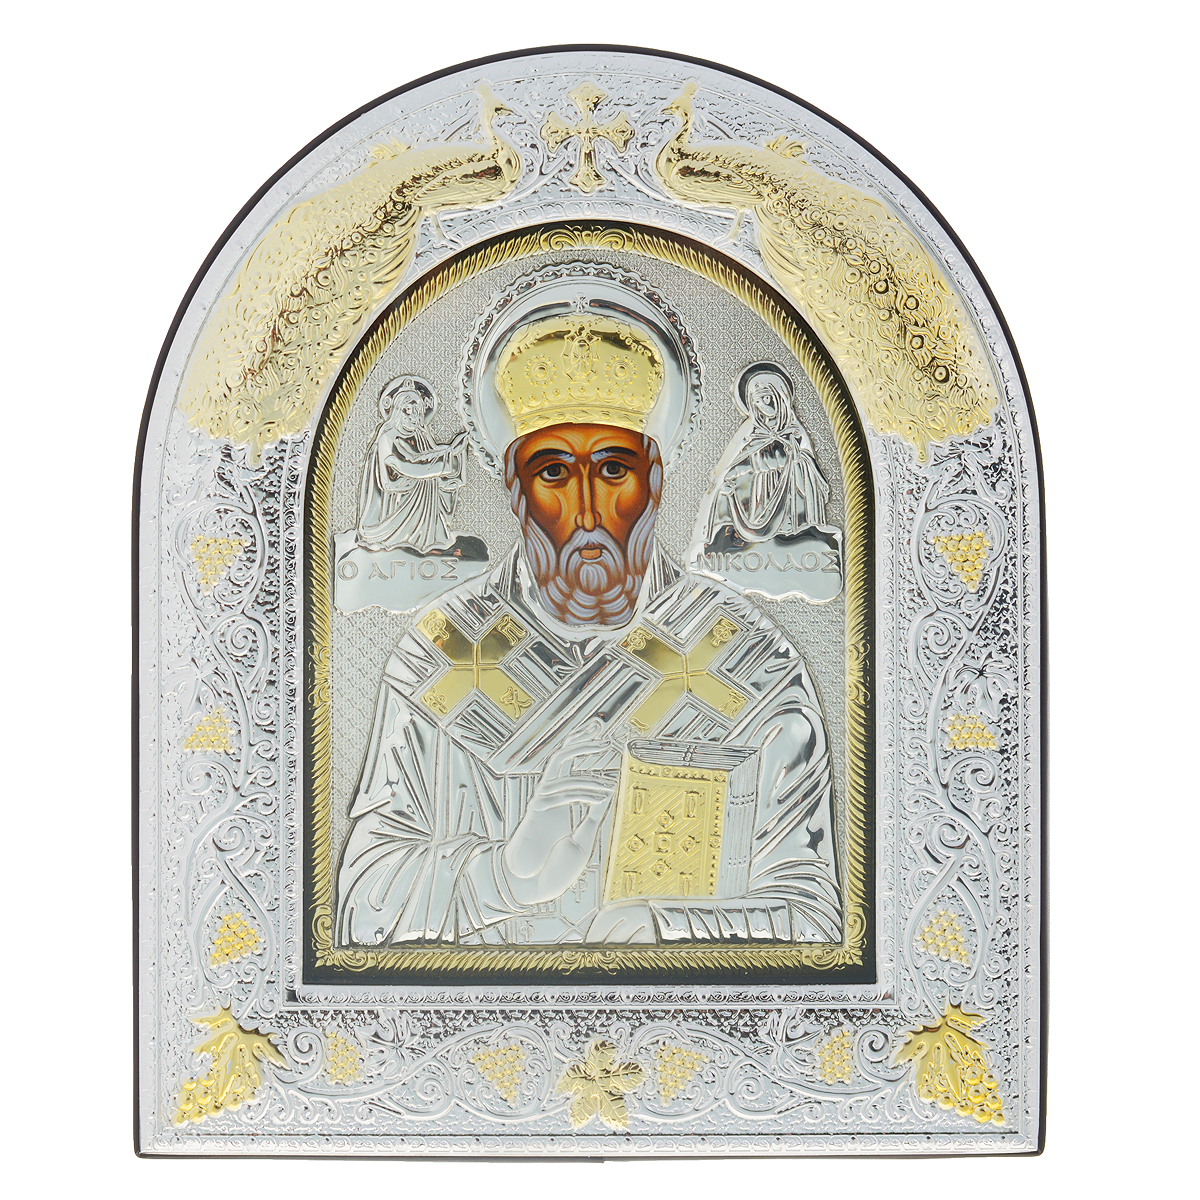 Икона Святителя Николая Чудотворца, 30 см х 25,2 см